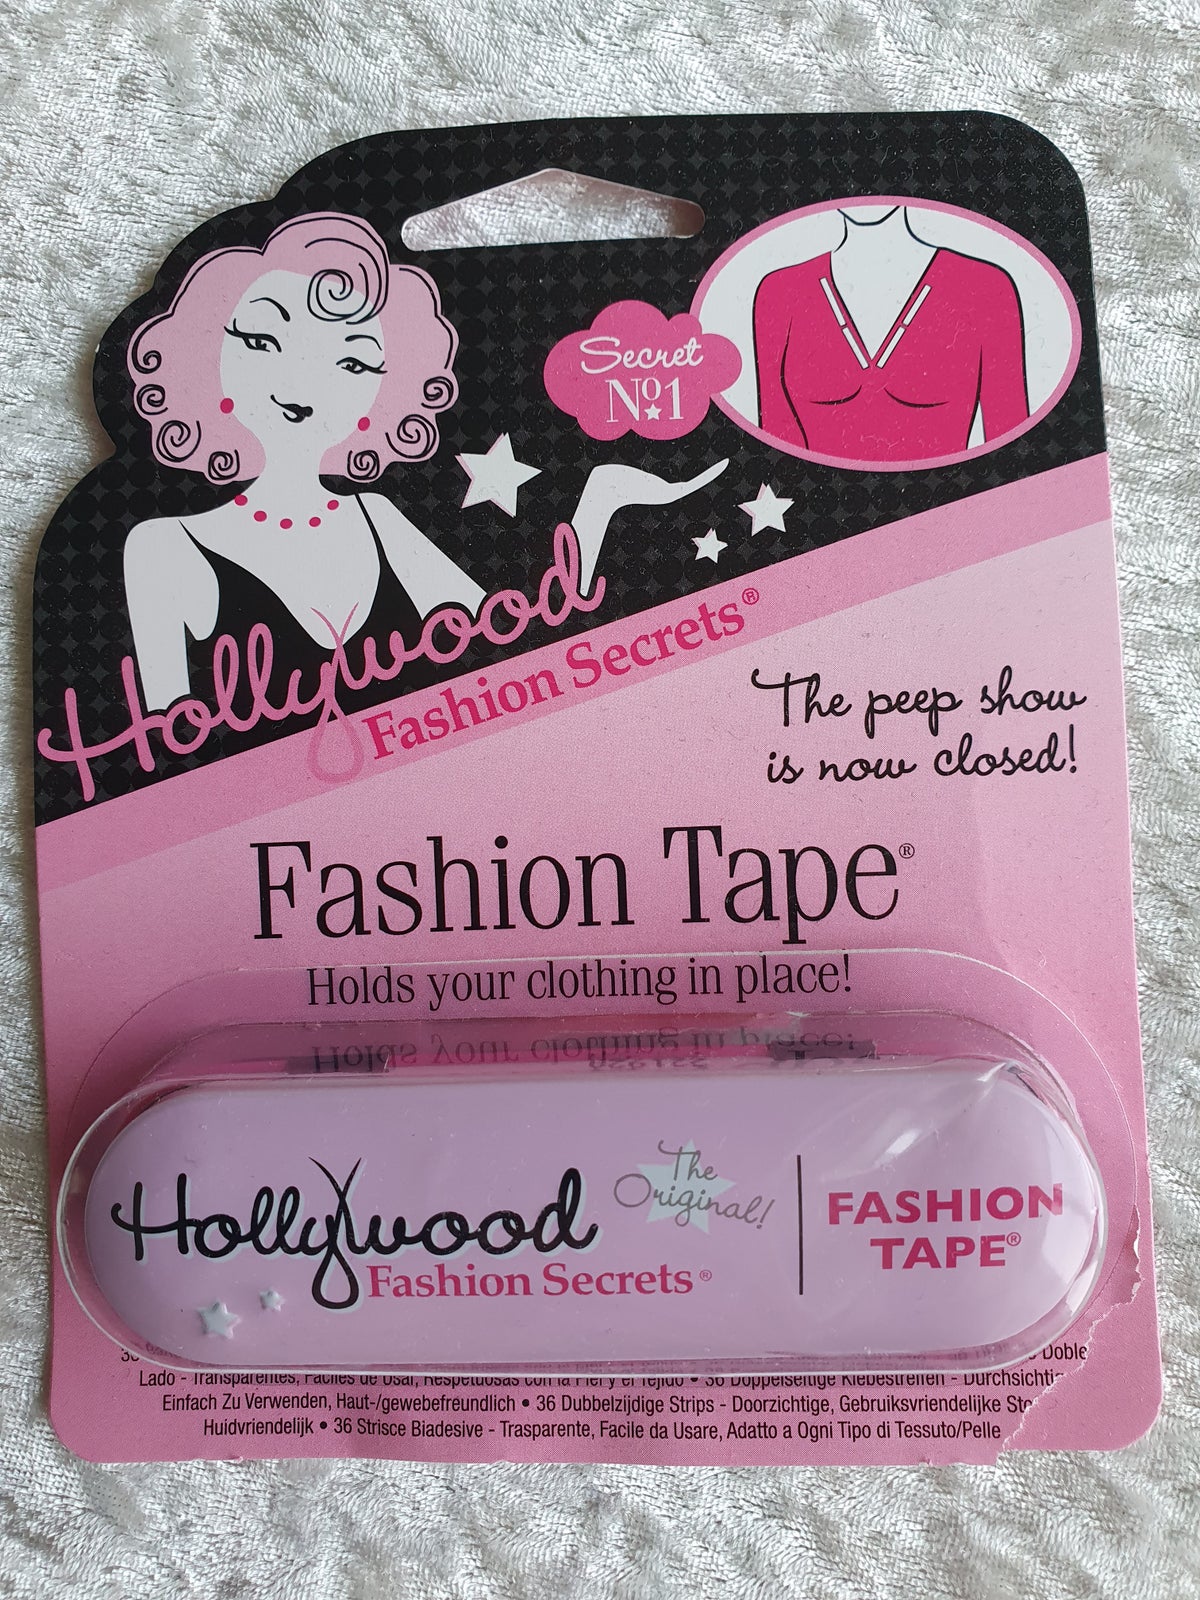 Andet, Fashion tape, Hollywood Fashion Secrets – dba.dk – Køb og Salg af Nyt og